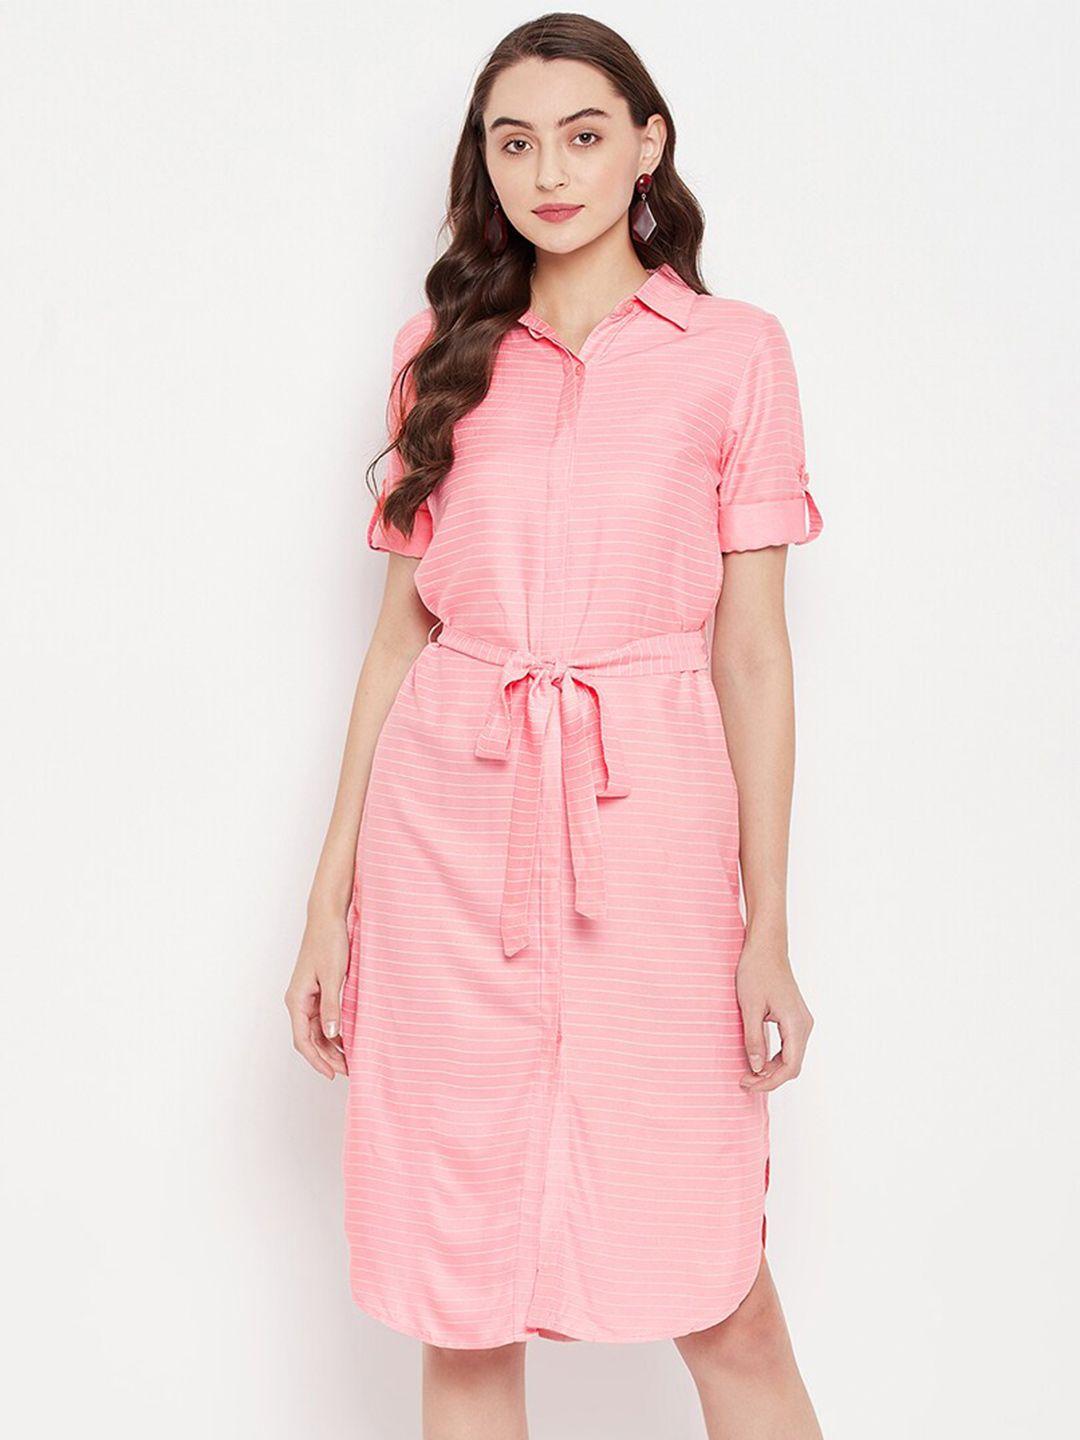 style-blush-striped-belted-shirt-dress